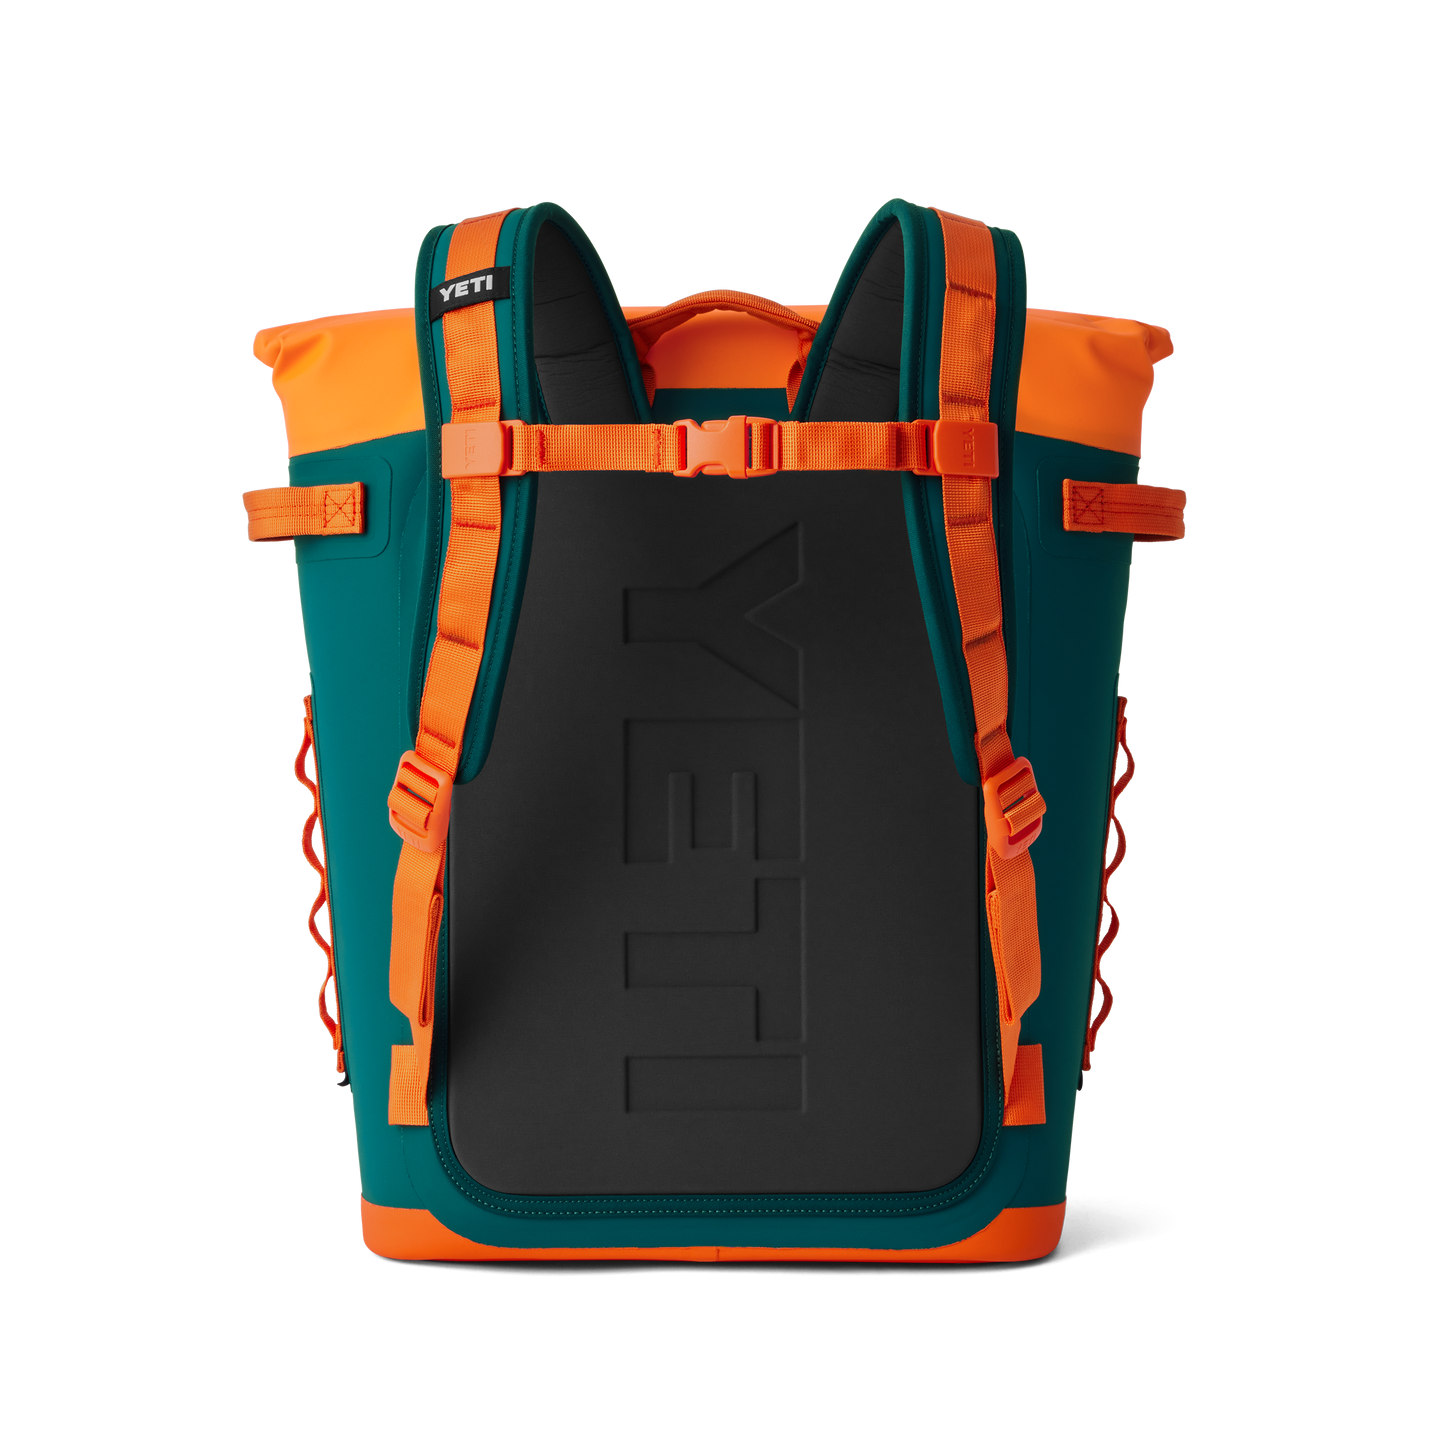 YETI Hopper® M20 Soft Backpack Cooler Teal/Orange